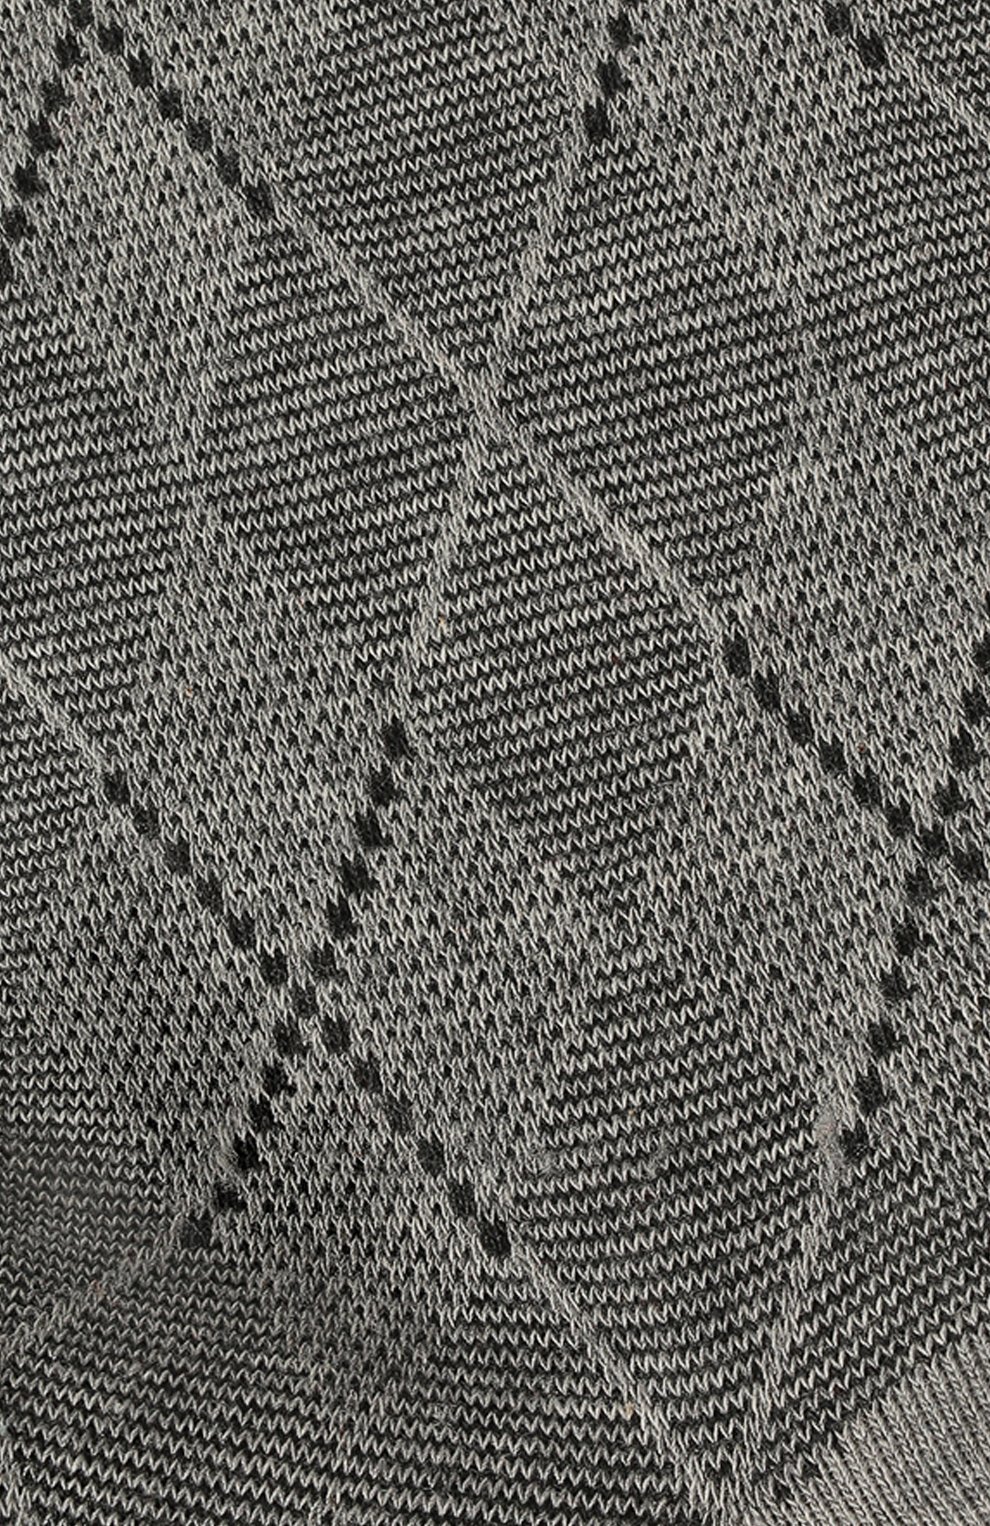 Мужские хлопковые носки BURLINGTON серого цвета, арт. 21061. | Фото 2 (Кросс-КТ: бельё; Материал внешний: Хлопок)